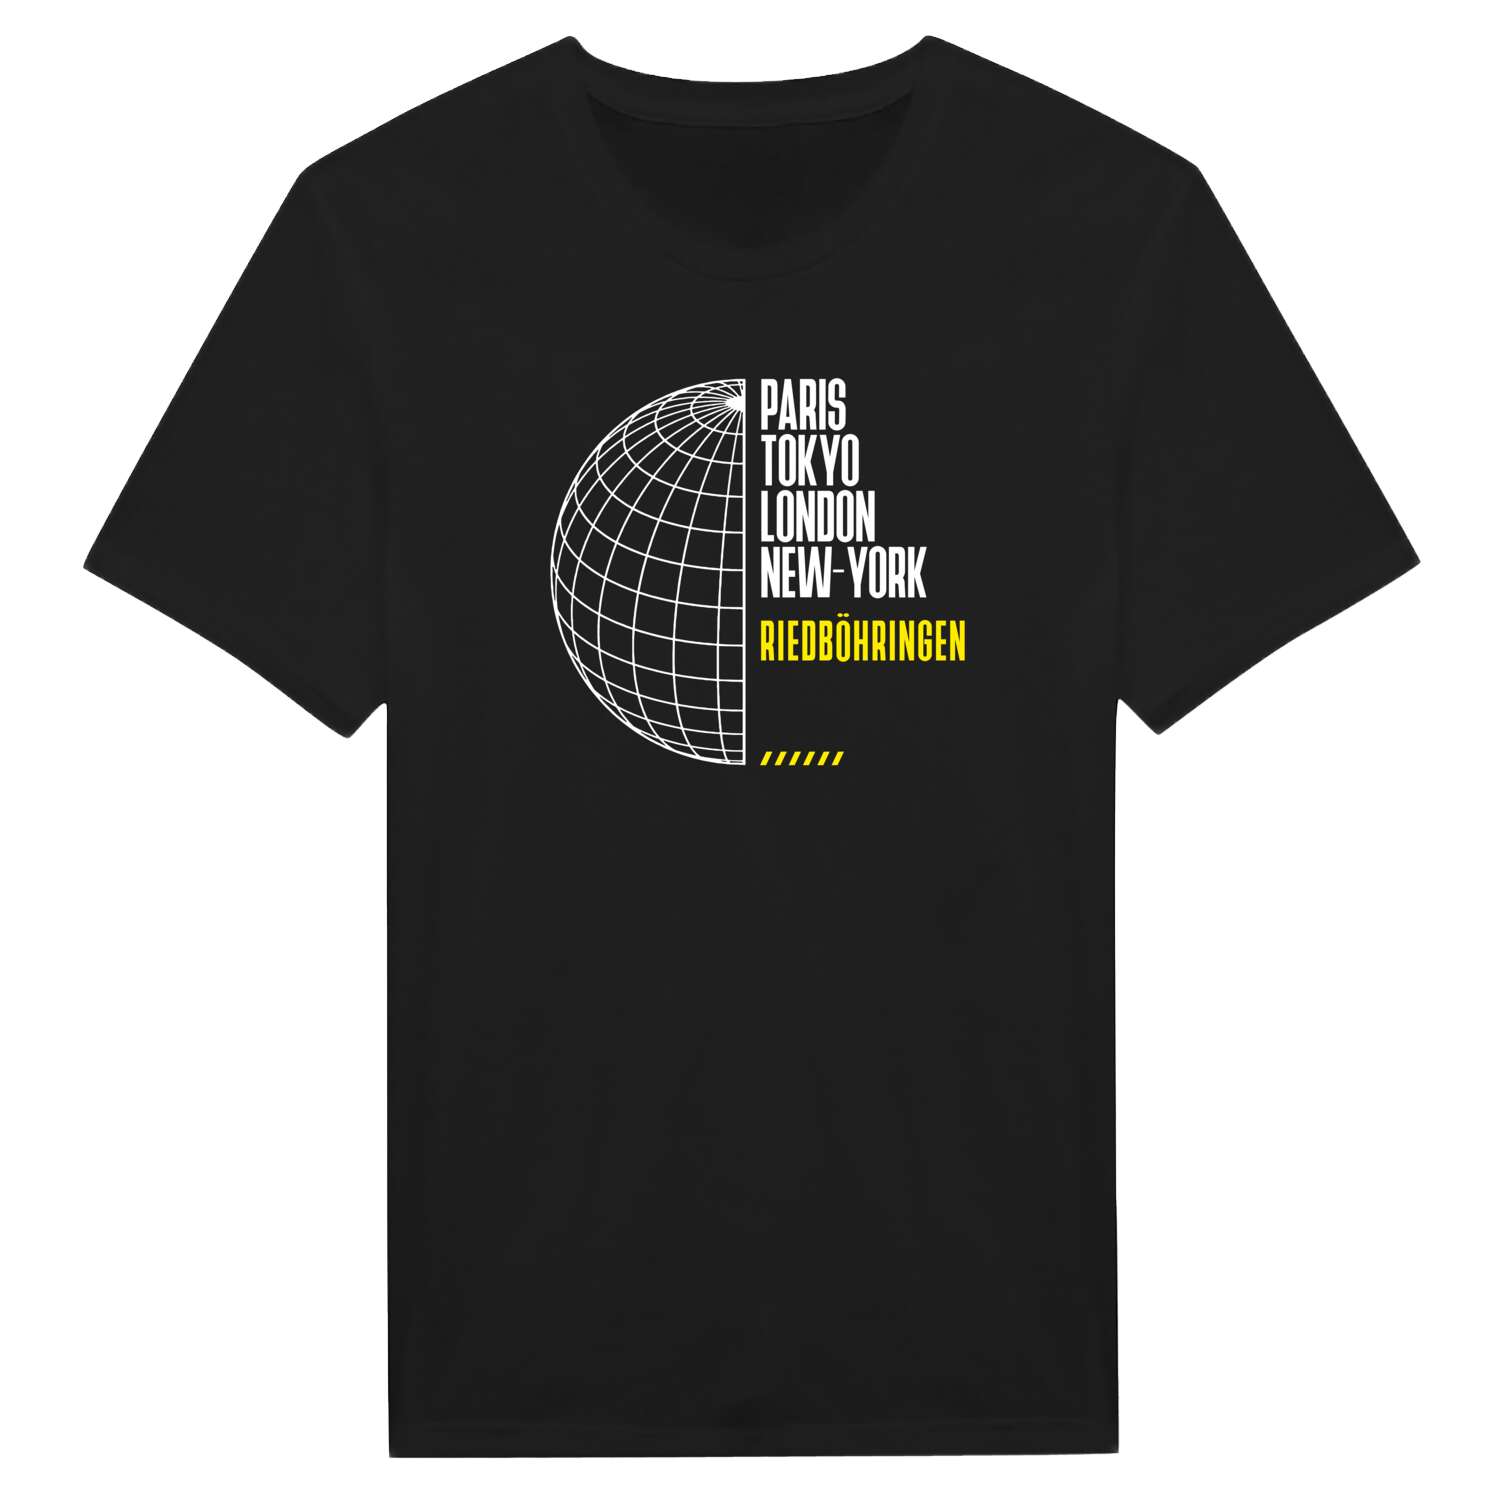 Riedböhringen T-Shirt »Paris Tokyo London«